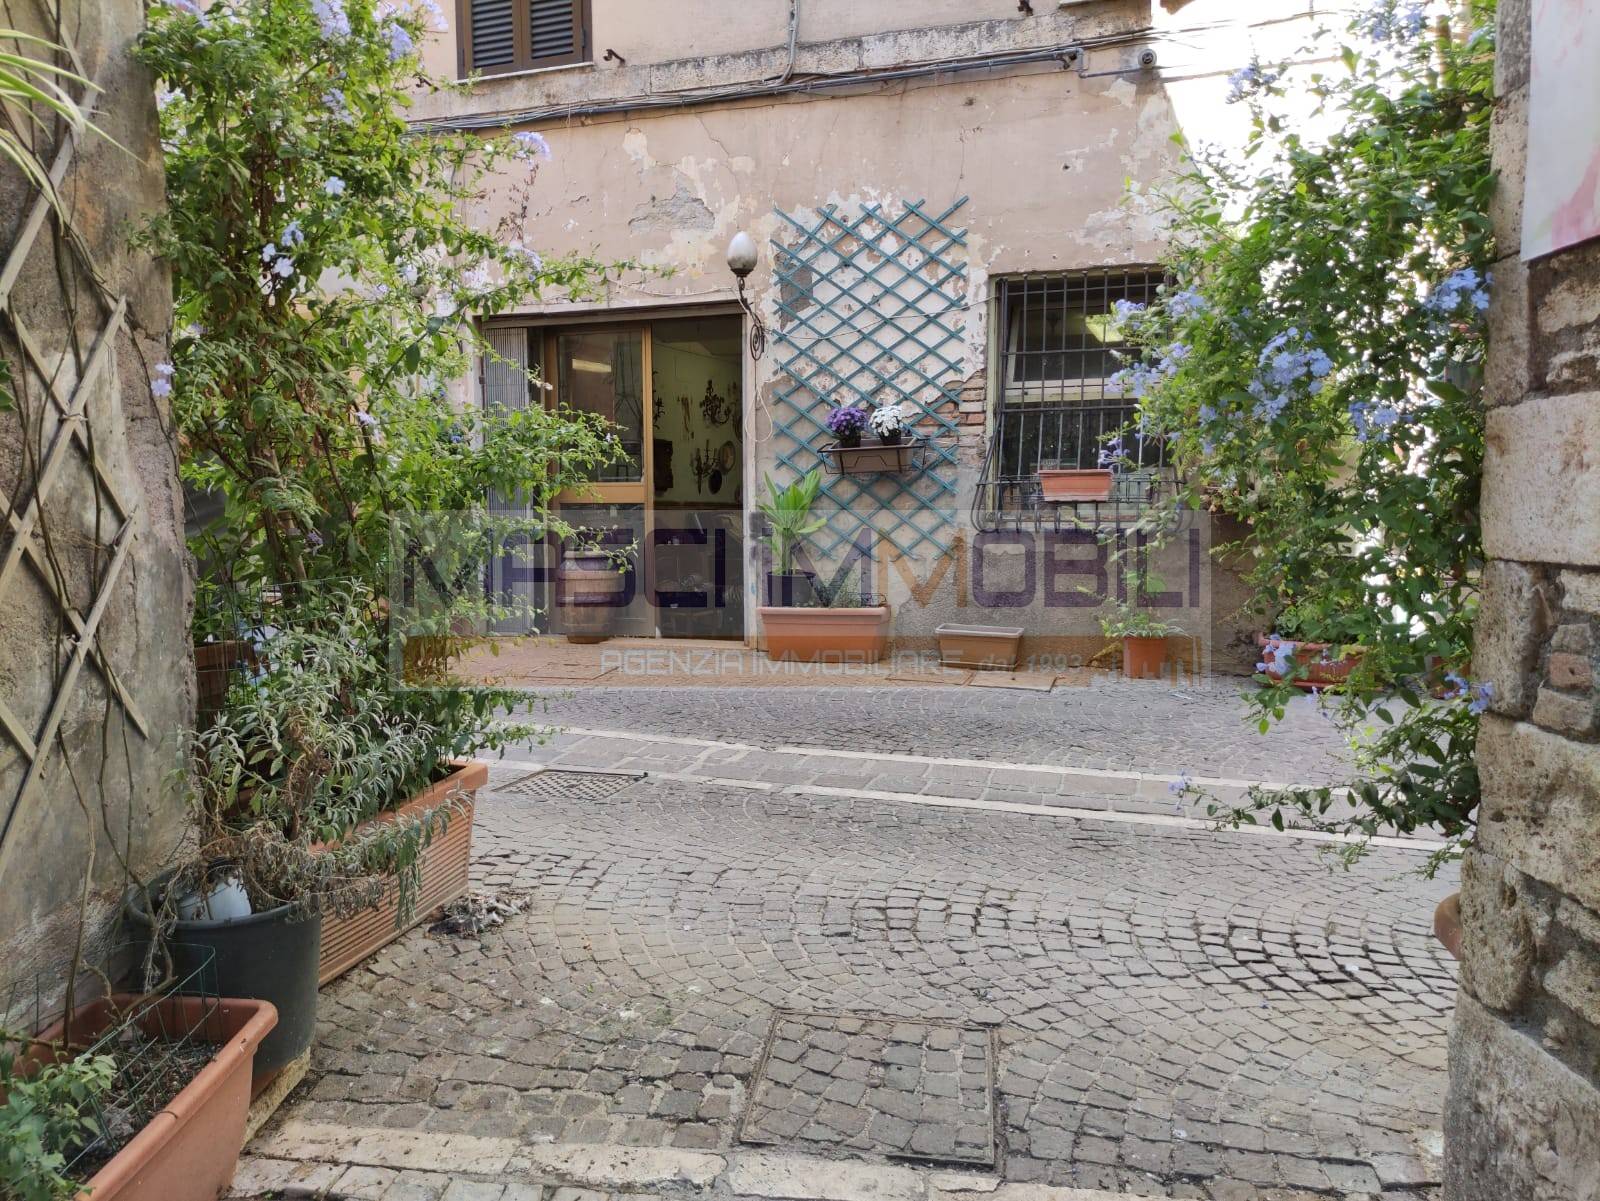 Negozio / Locale in vendita a Fiano Romano, 2 locali, prezzo € 49.000 | CambioCasa.it